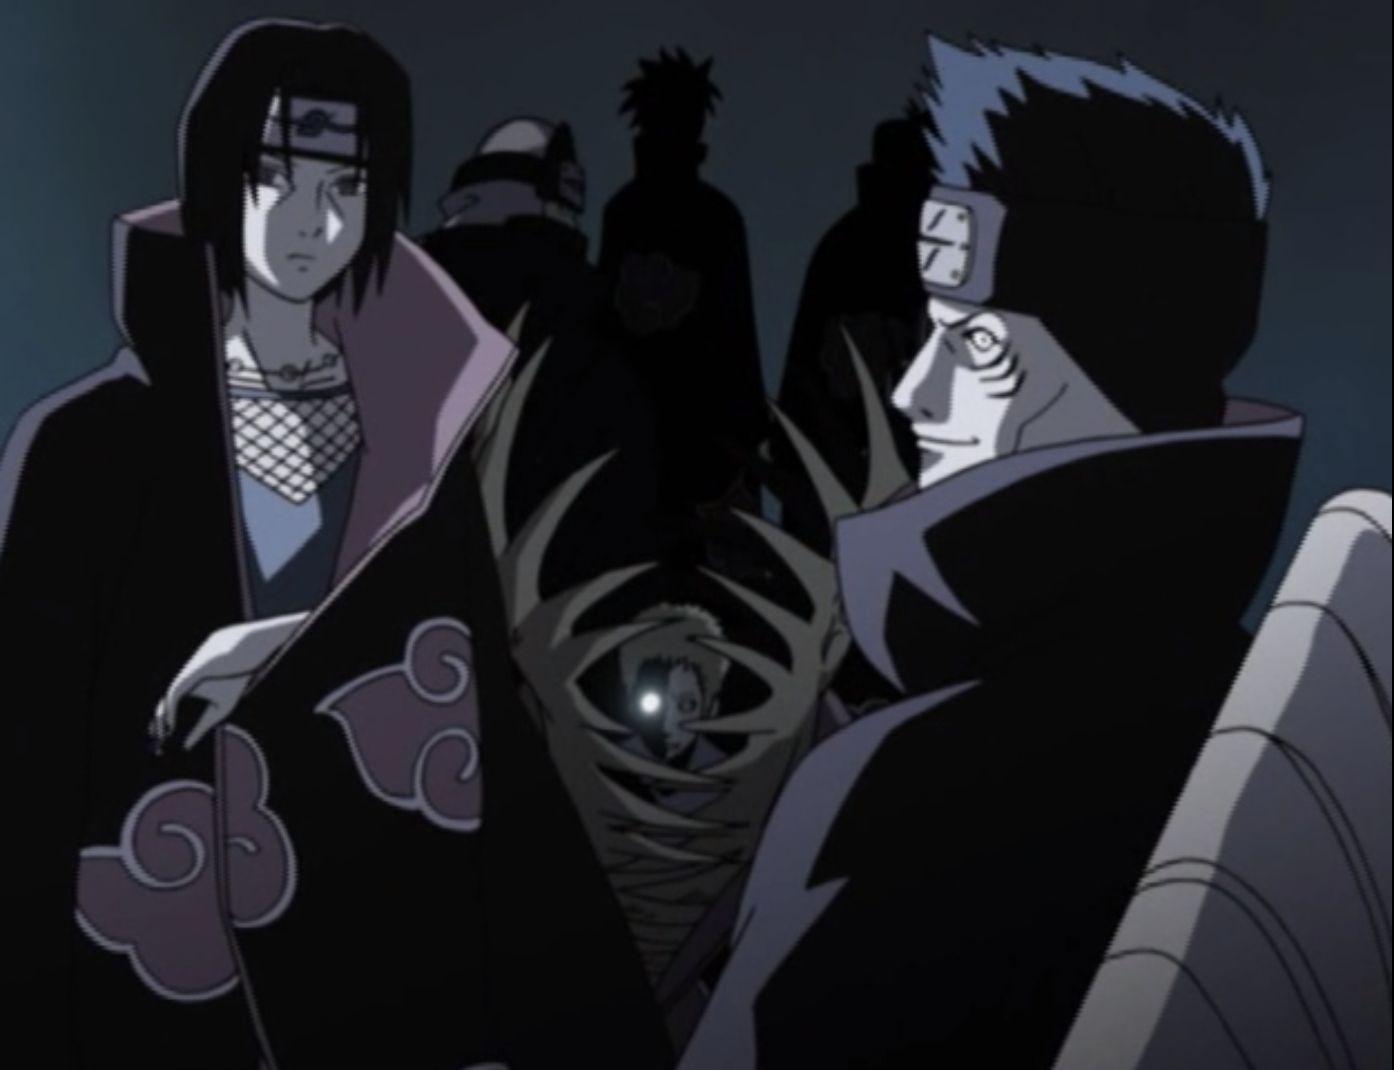 Os 10 episódios mais assistidos de Naruto Shippuden na década